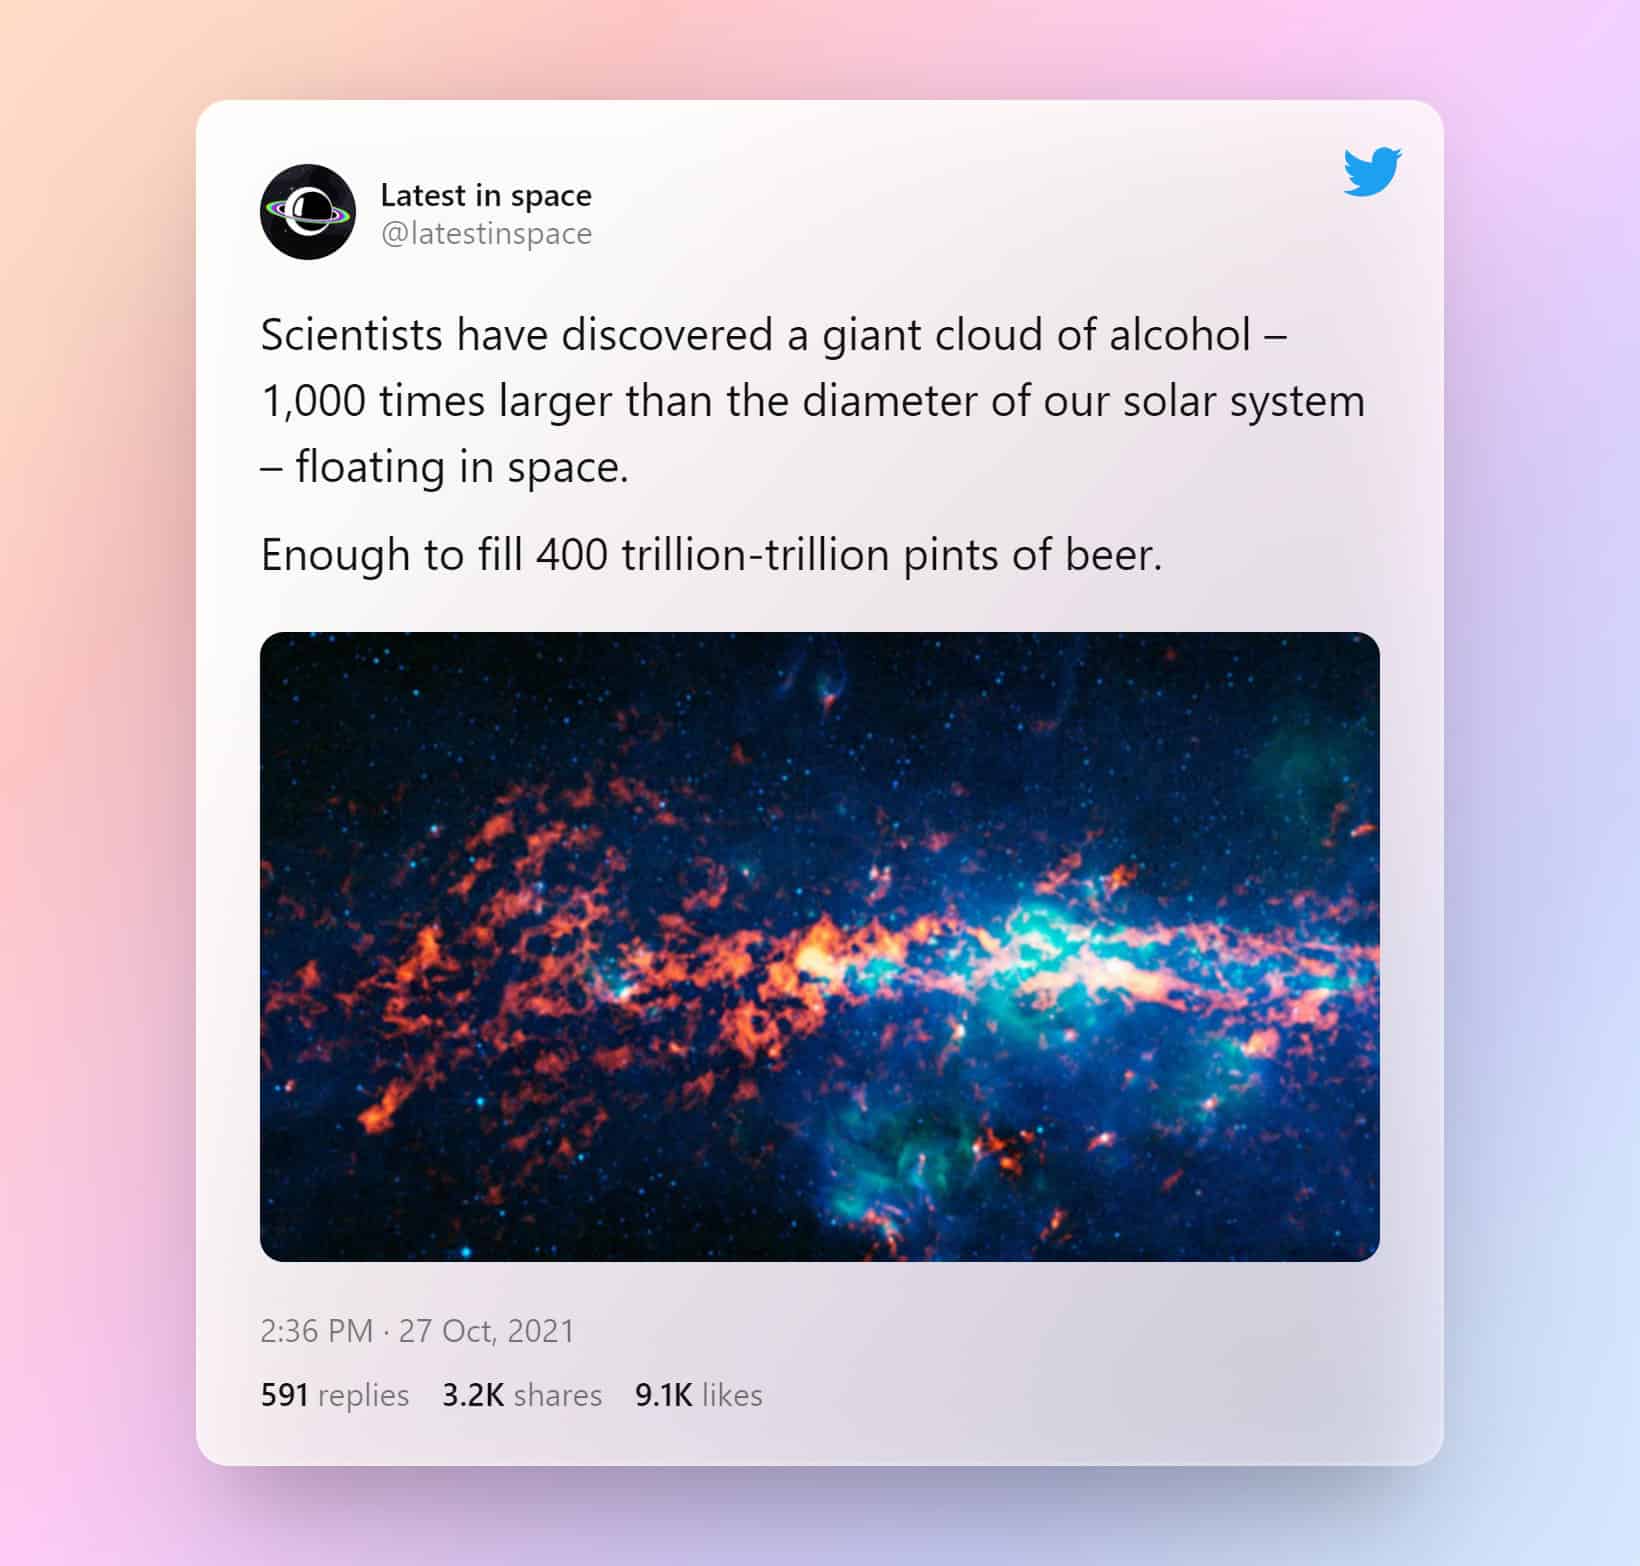 Des scientifiques découvrent un nuage géant d'alcool - 1000 fois plus large que le diamètre de notre système solaire